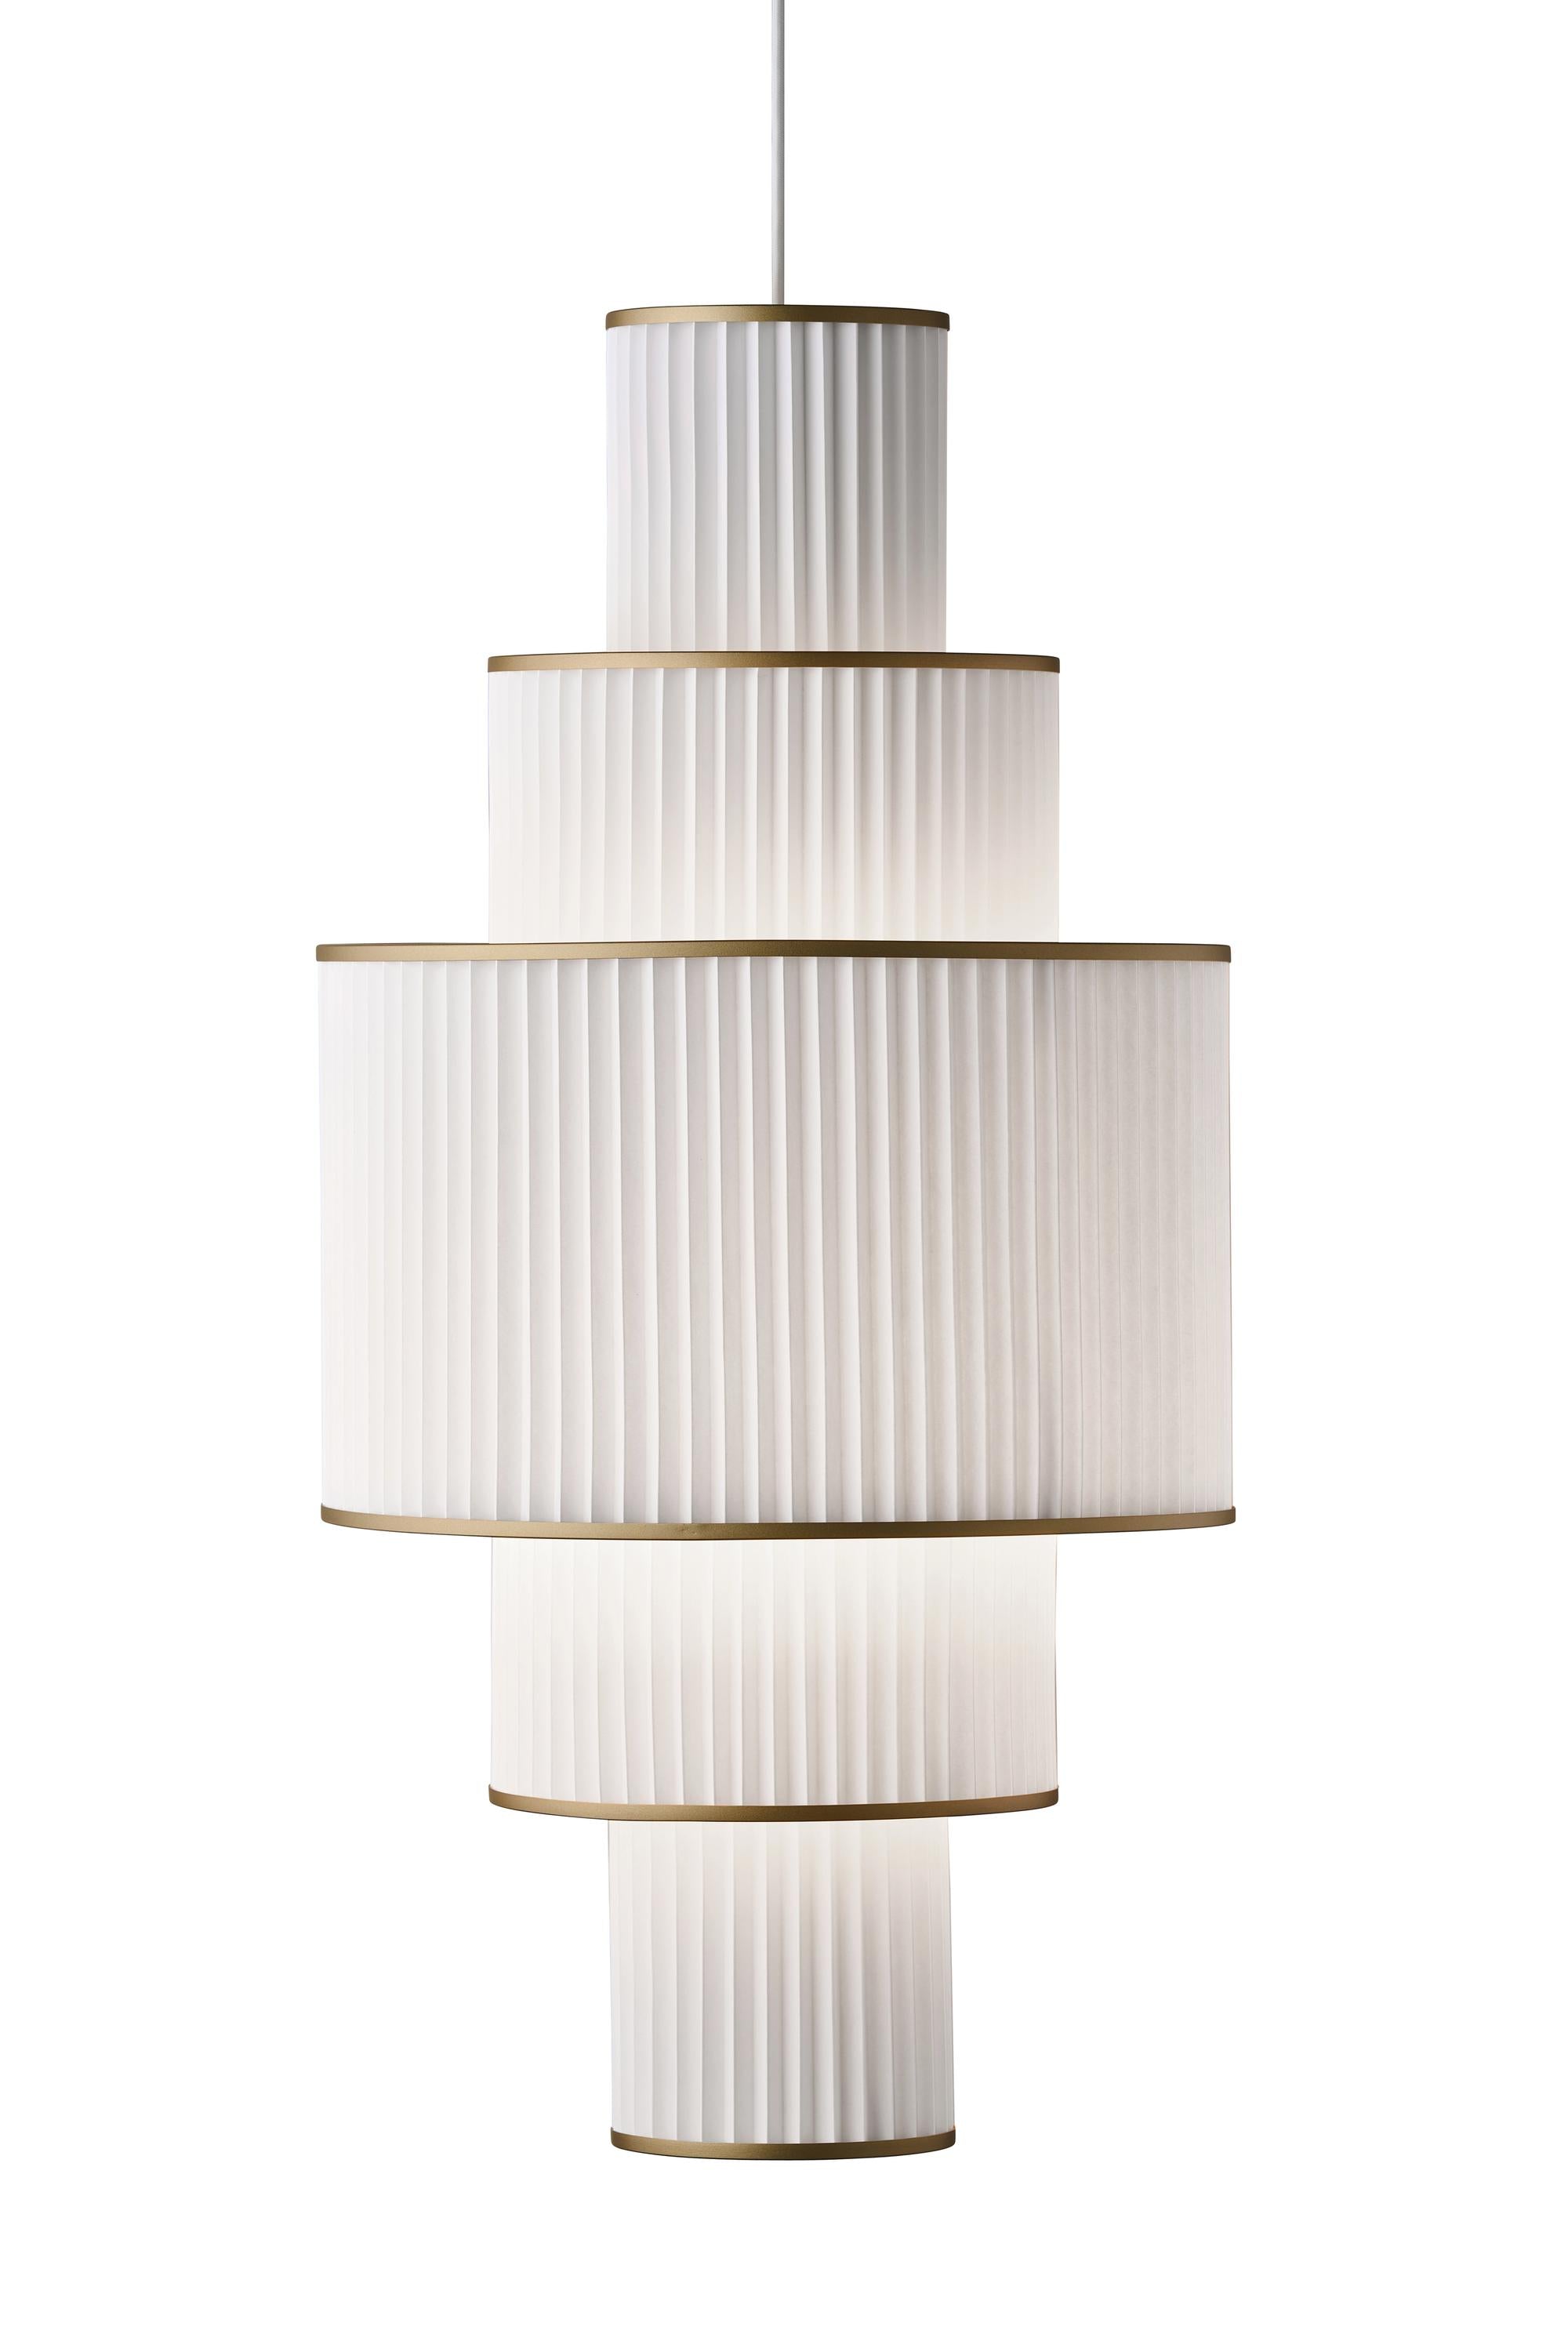 Le Klint Plivello Suspension Lamp Golden/White med 5 nyanser (S M L M S)